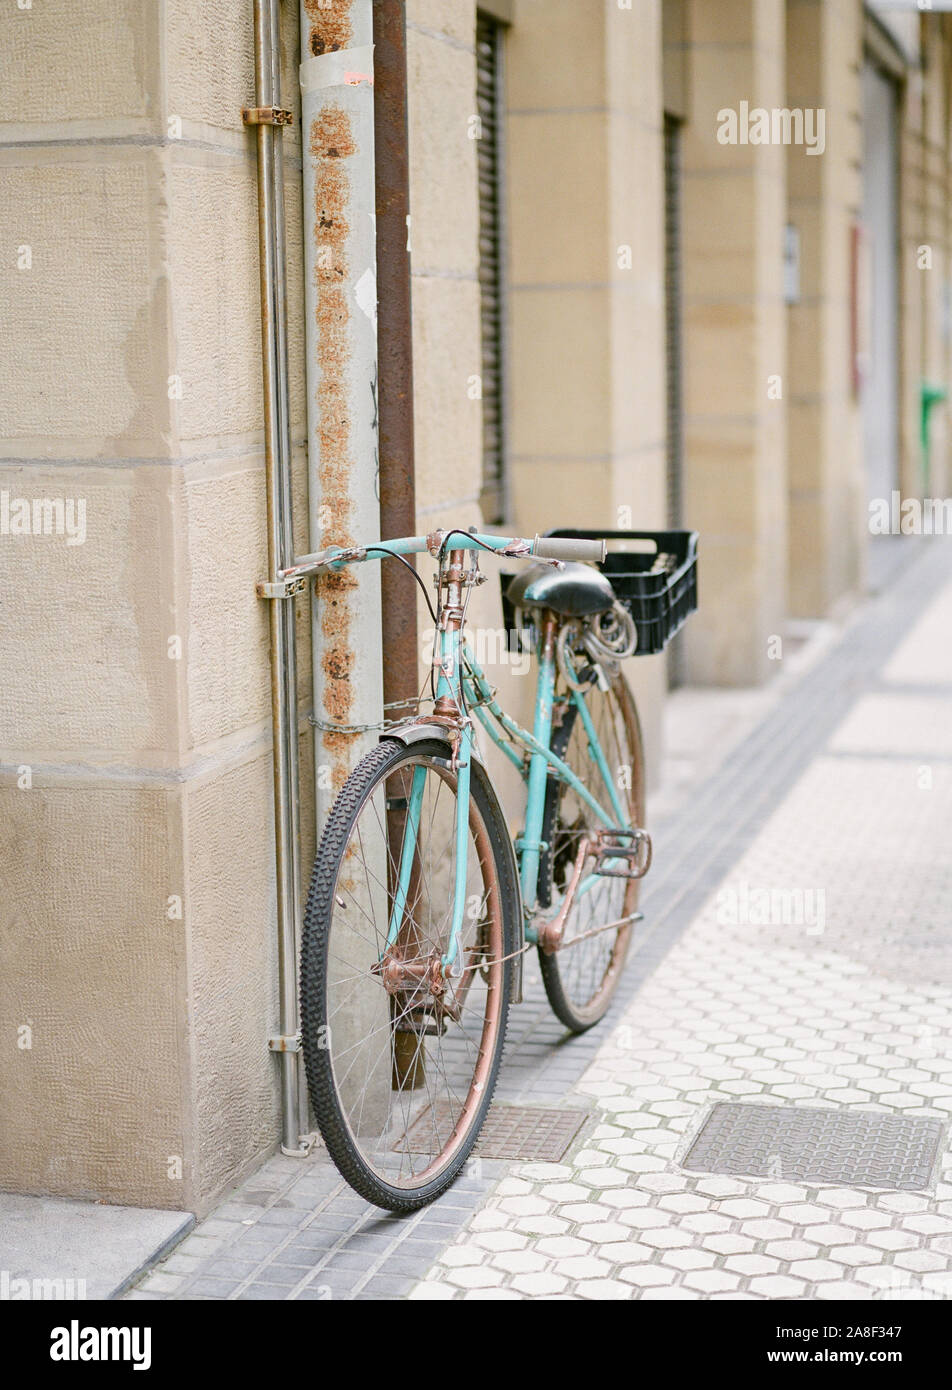 Una vieja bicicleta verde azulado apoyado contra una pared en la ciudad vieja de San Sebastián, España Foto de stock